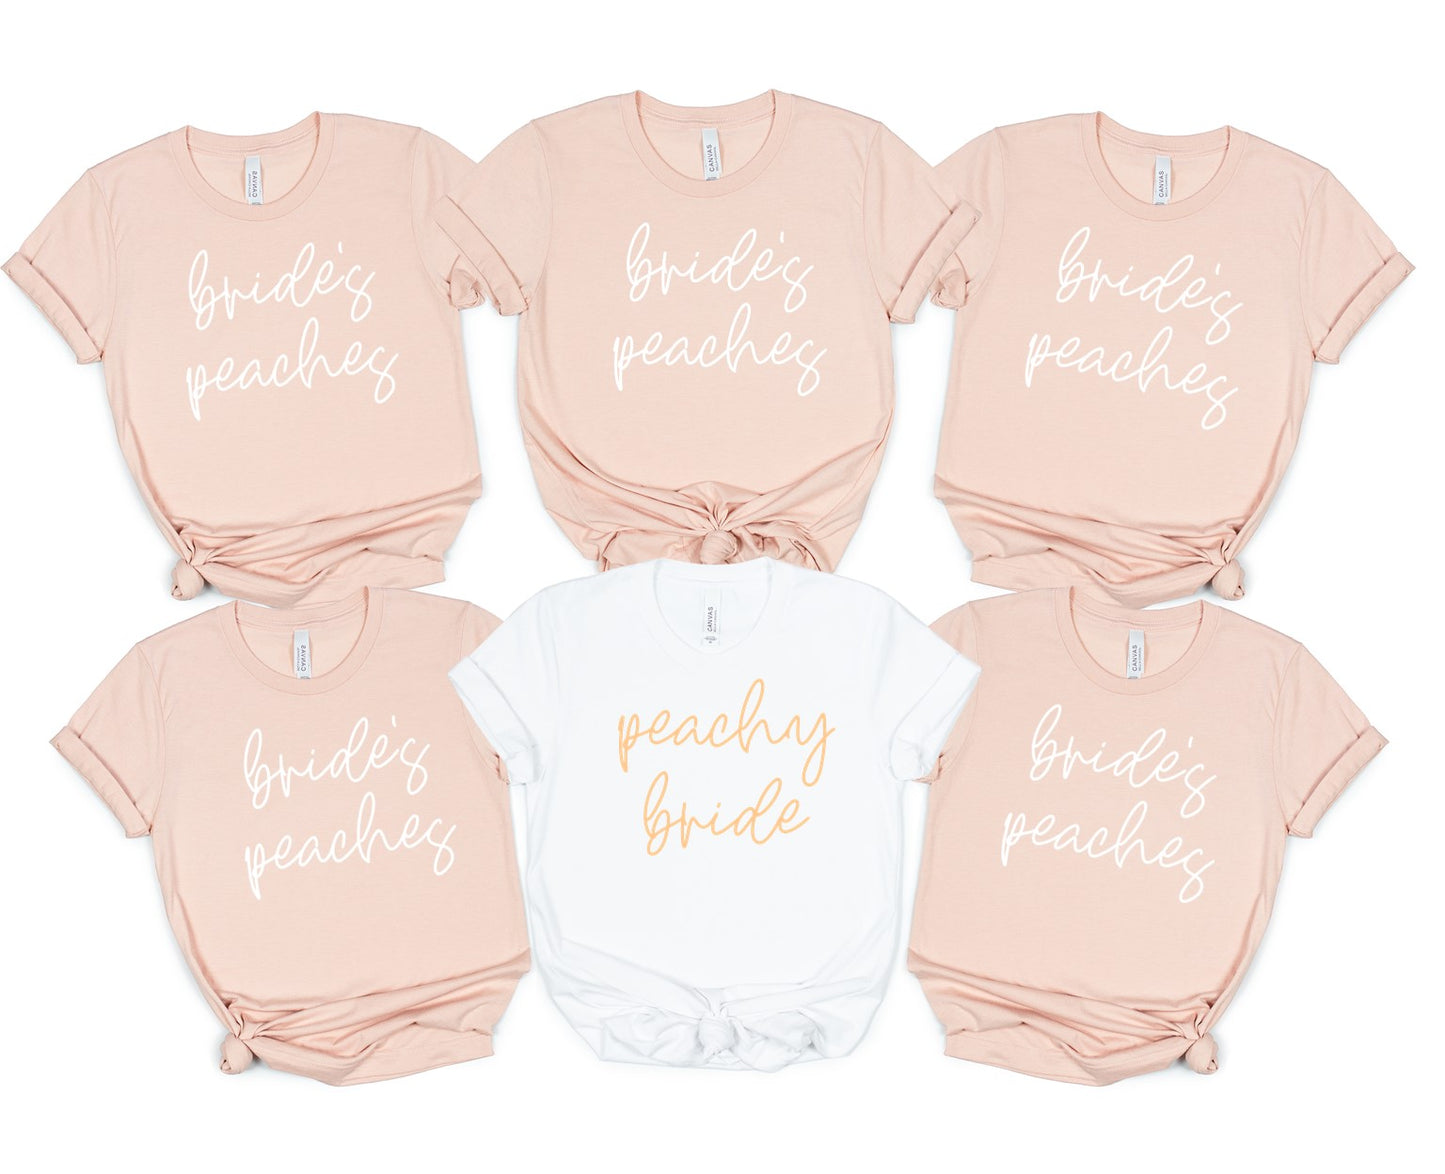 Peachy Bride/Bride's Peaches - Bachelorette Shirts